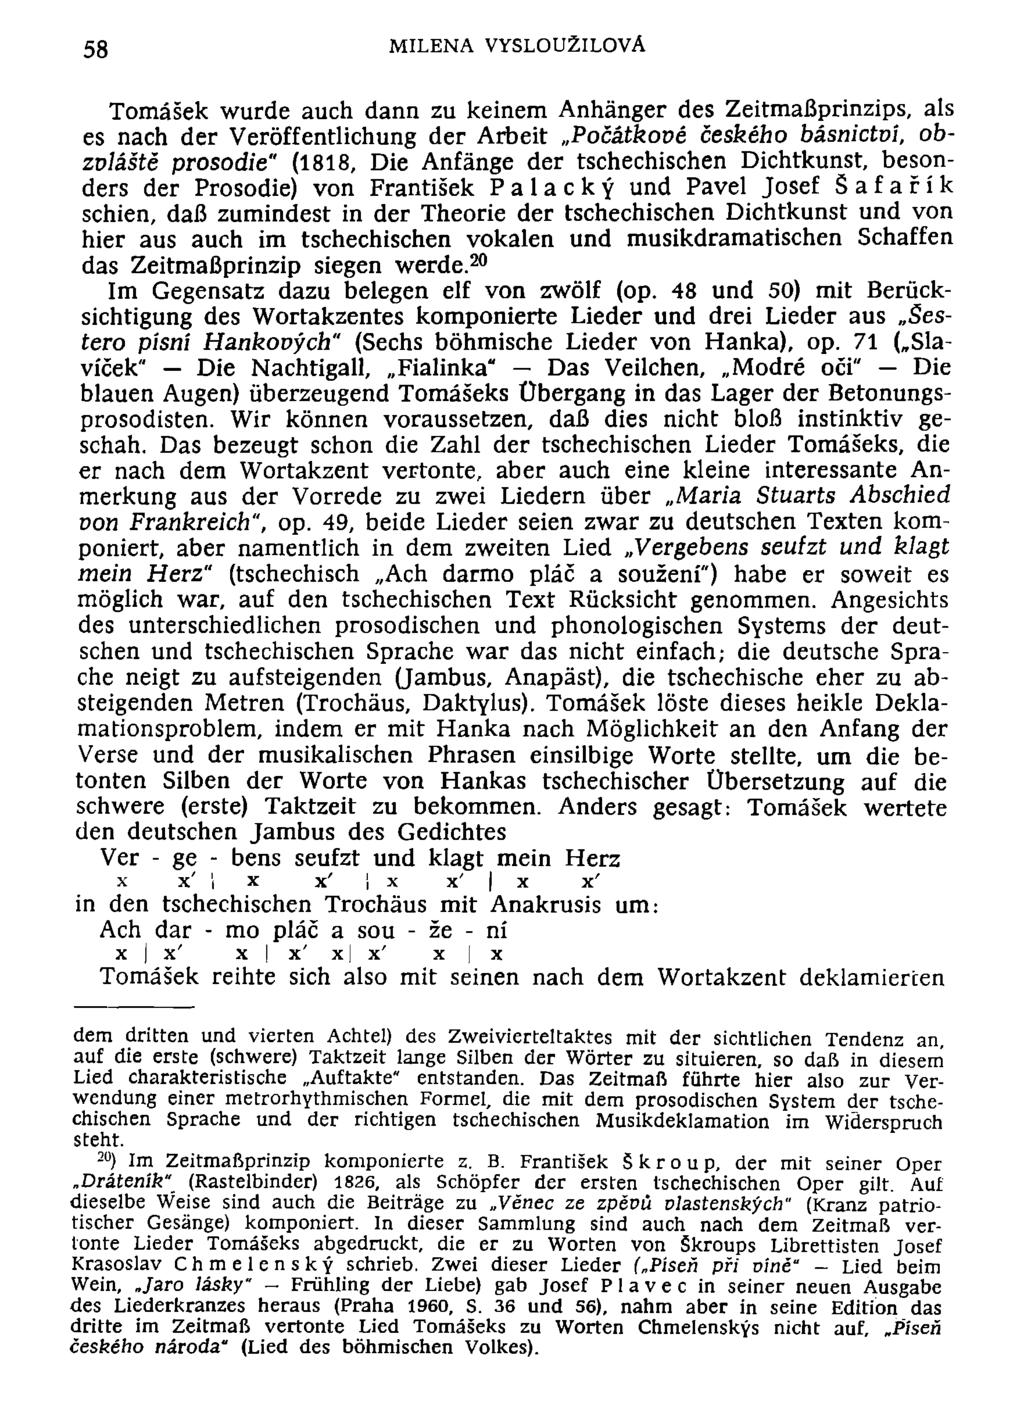 58 MILENA VYSLOU2ILOVÄ Tomäsek wurde auch dann zu keinem Anhänger des Zeitmaßprinzips, als es nach der Veröffentlichung der Arbeit Pocätkove ceskeho bäsnictvi, obzoläste prosodie" (1818, Die Anfänge